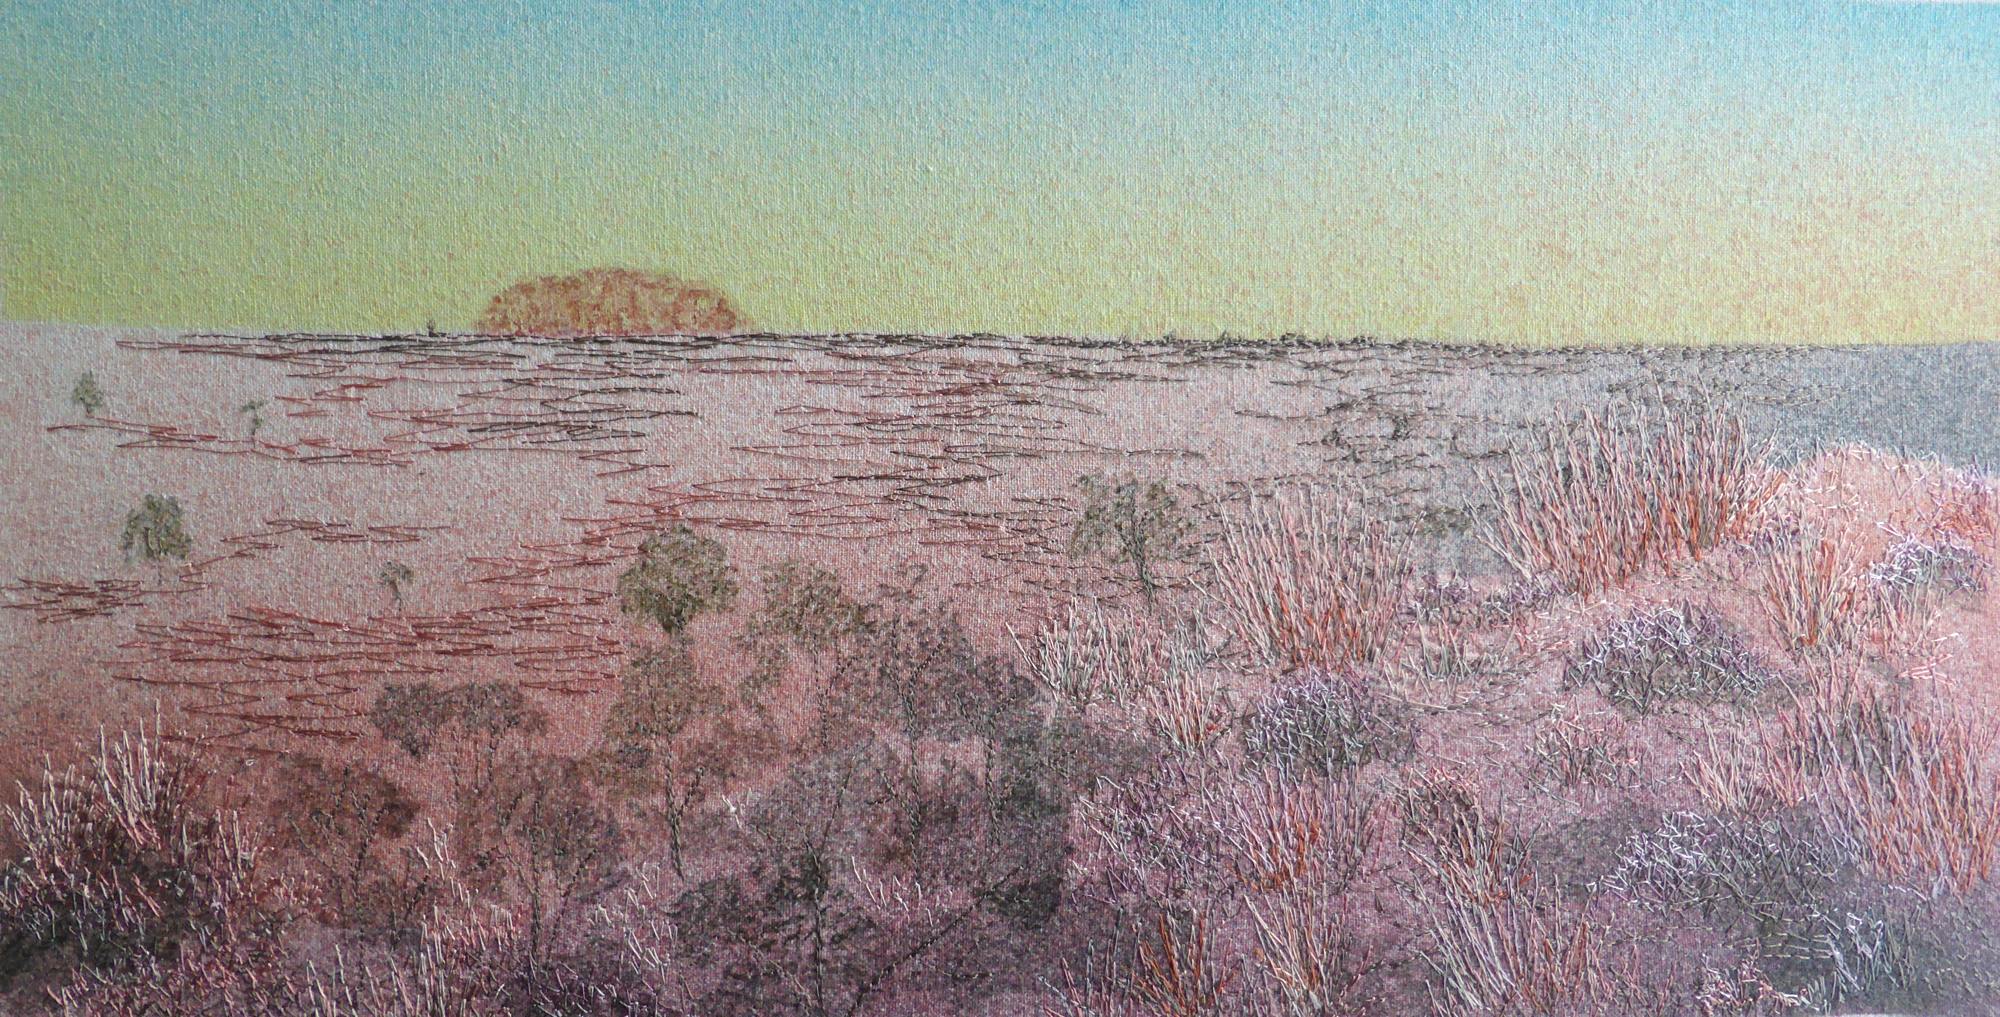 Uluru at Sunrise (2014) Artwork by Andrea McCallum